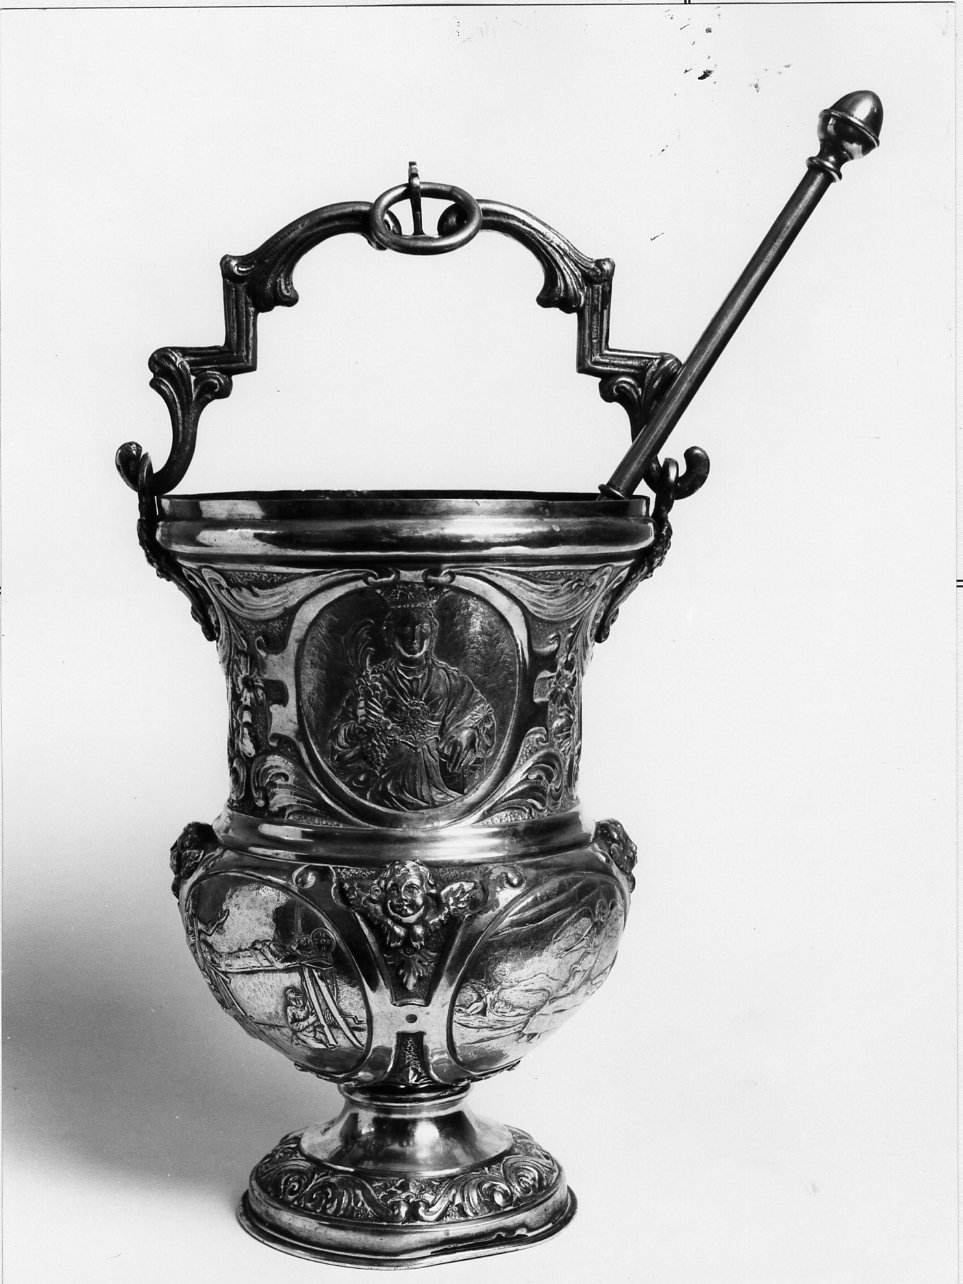 secchiello per l'acqua benedetta - bottega campana (seconda metà sec. XIX)